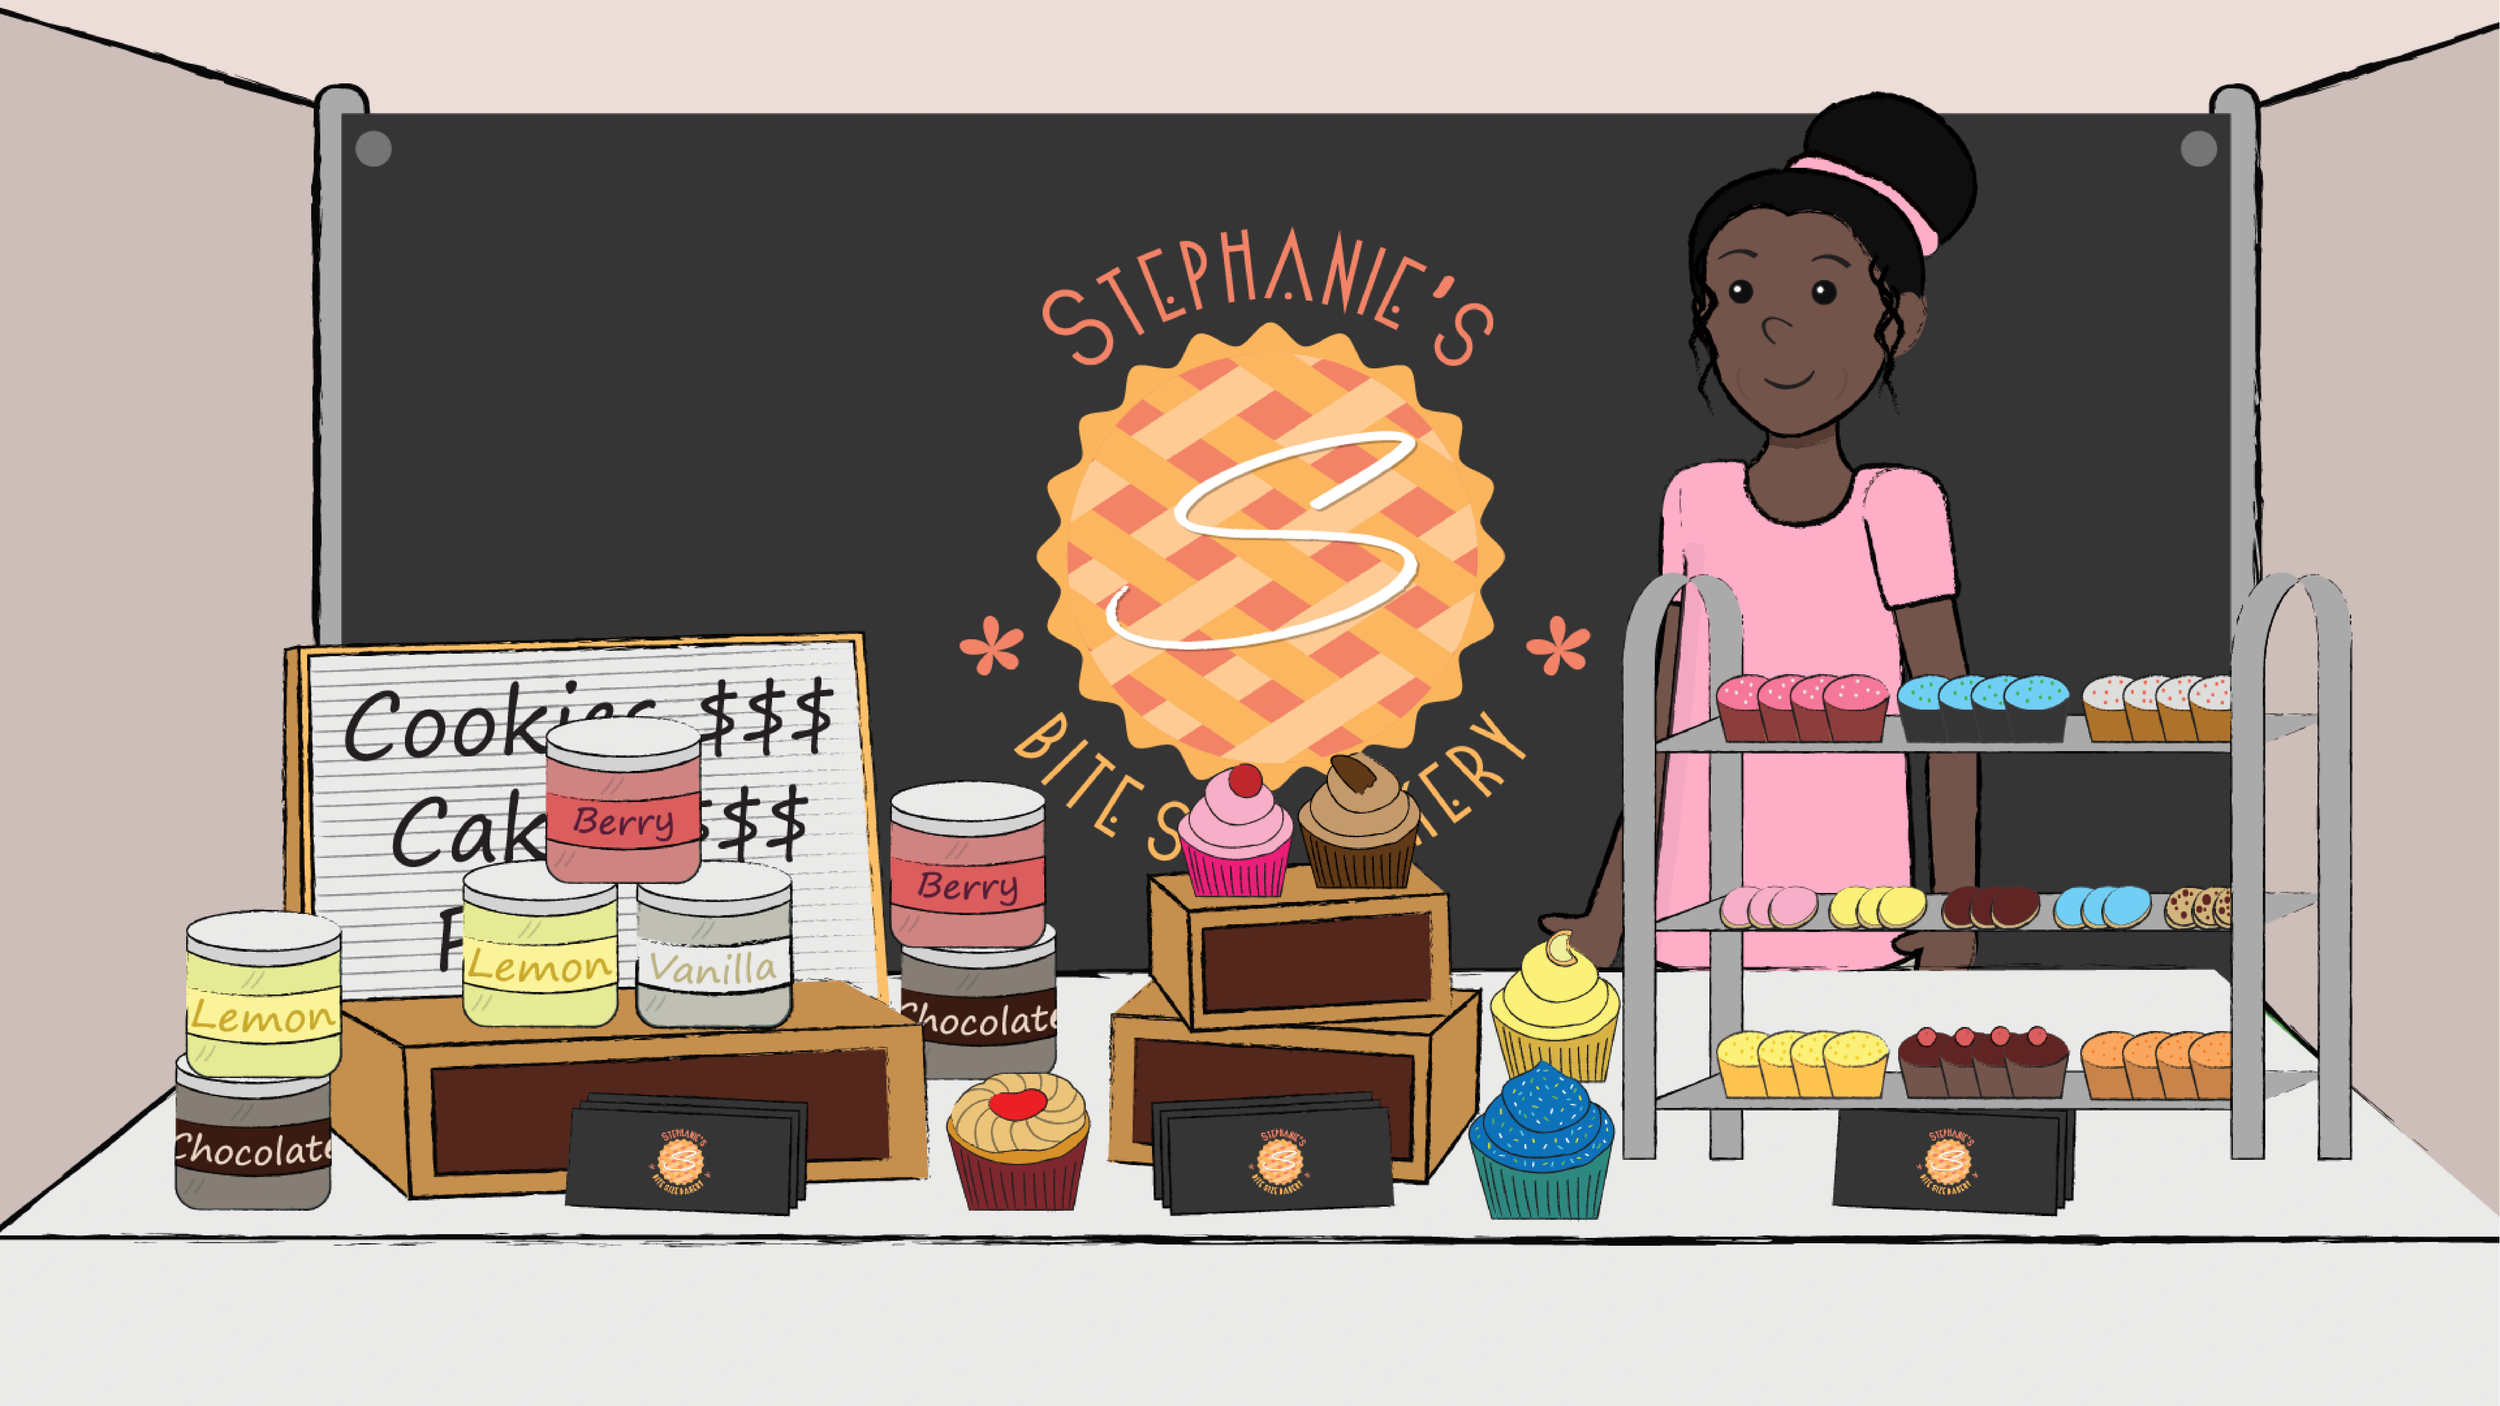 Stephanie's Bite Size Bakery